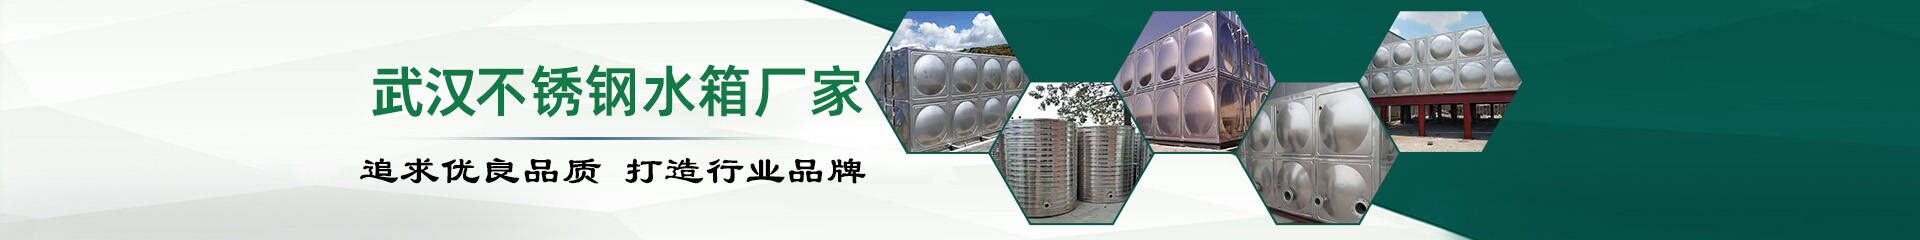 安装流程_武汉不锈钢水箱厂家联系方式